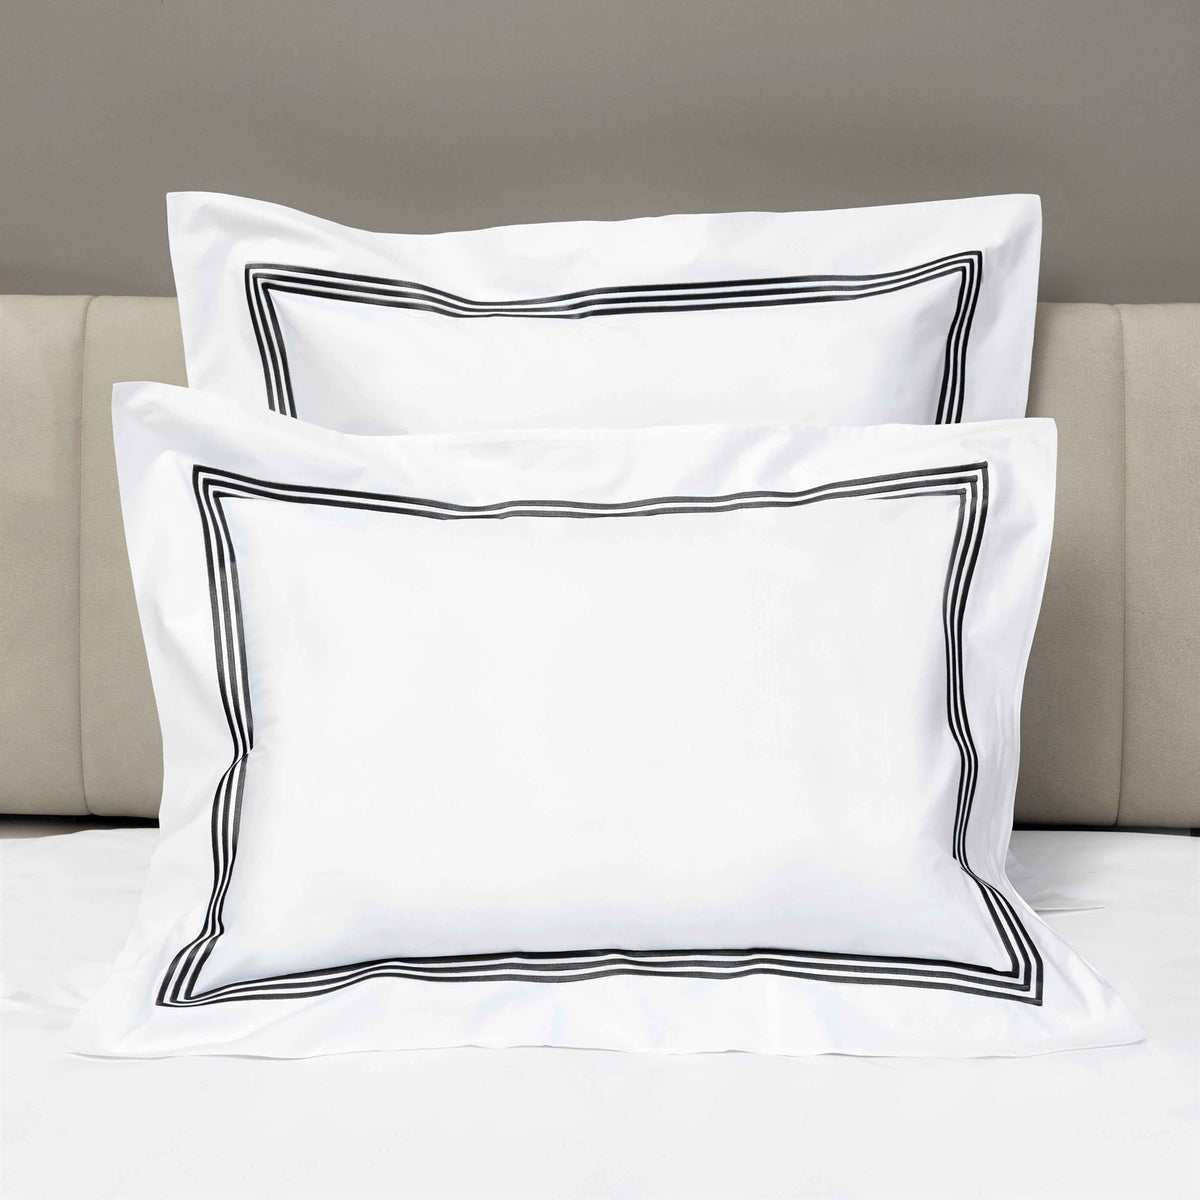 Shams of Signoria Platinum Percale Bedding in White/Black Color